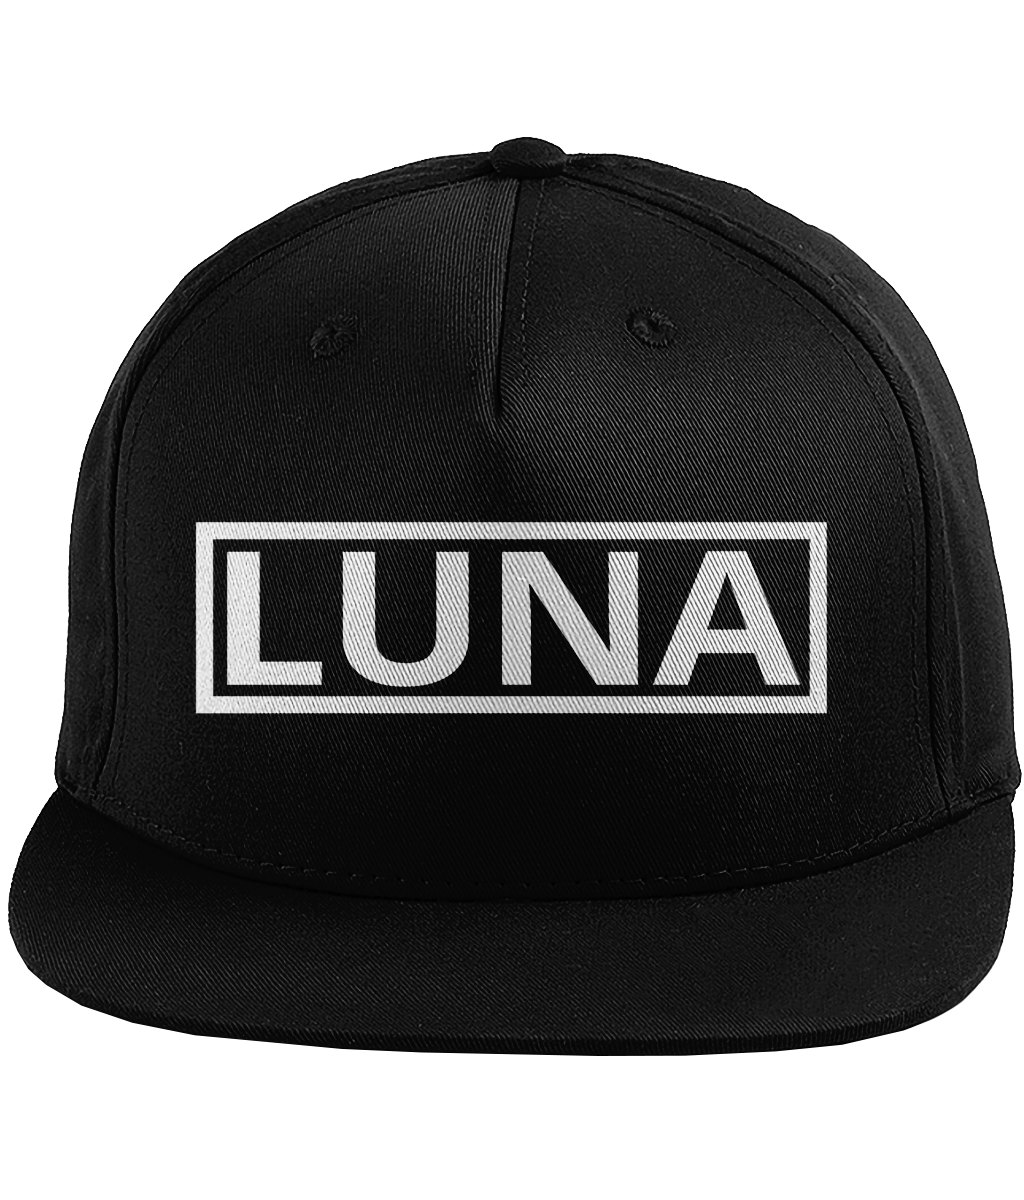 Fortuna Luna - Snapback - Zwart